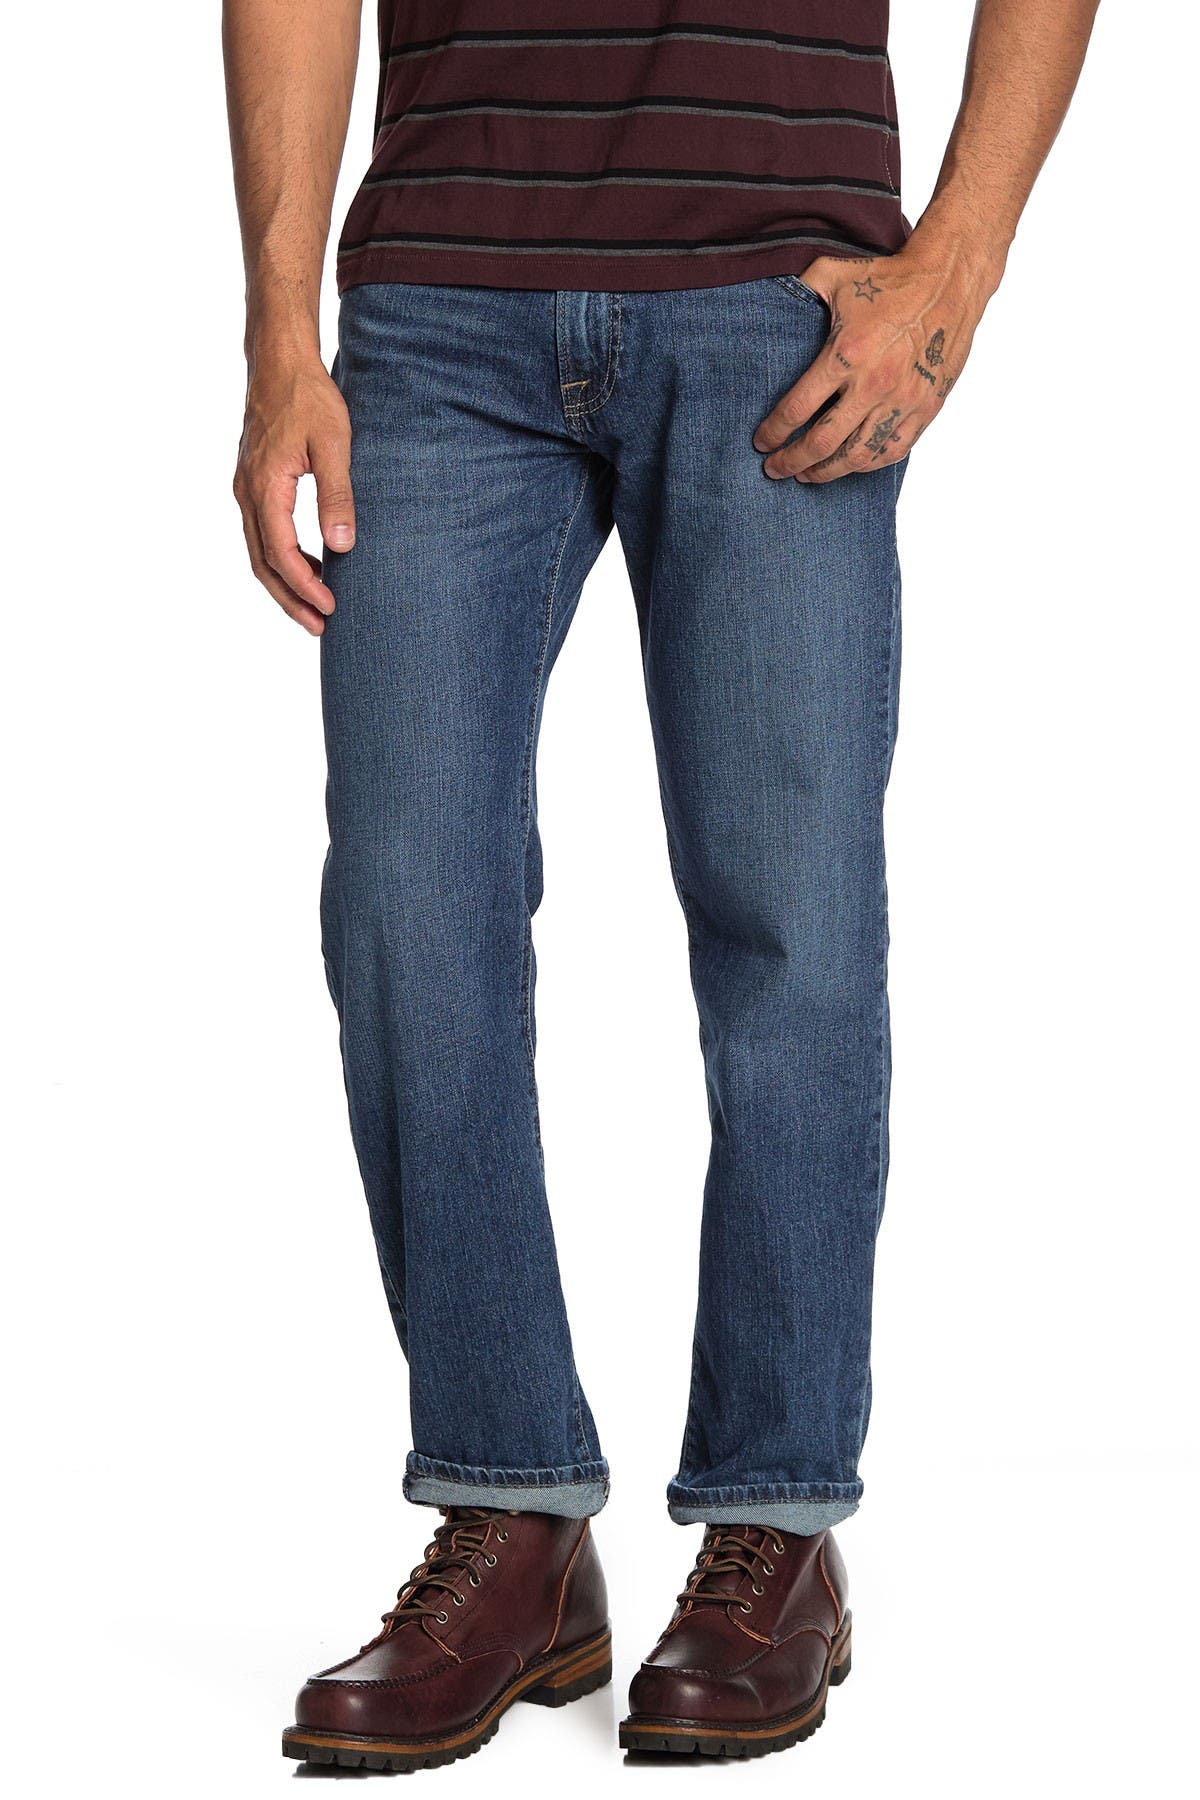 nordstrom rack lucky brand jeans